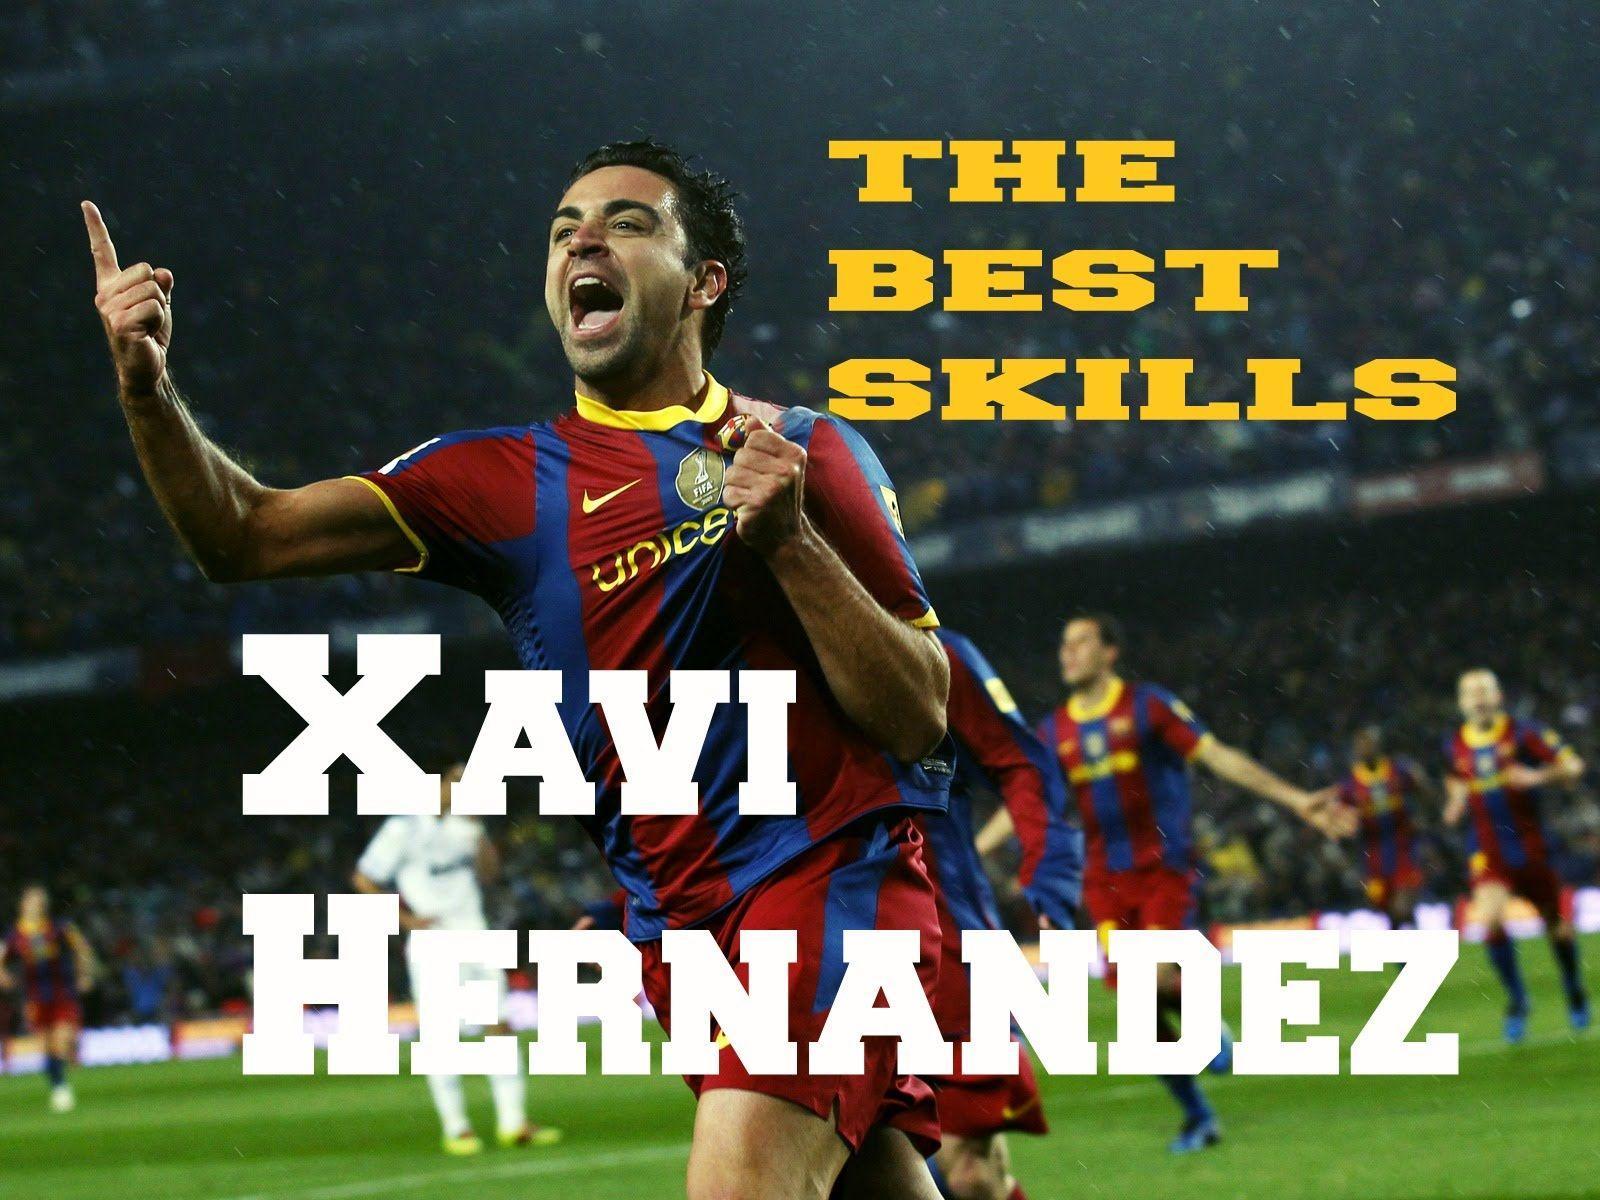 Xavi Hernandez Las Mejores Jugadas ● Javi Hernandez The Best